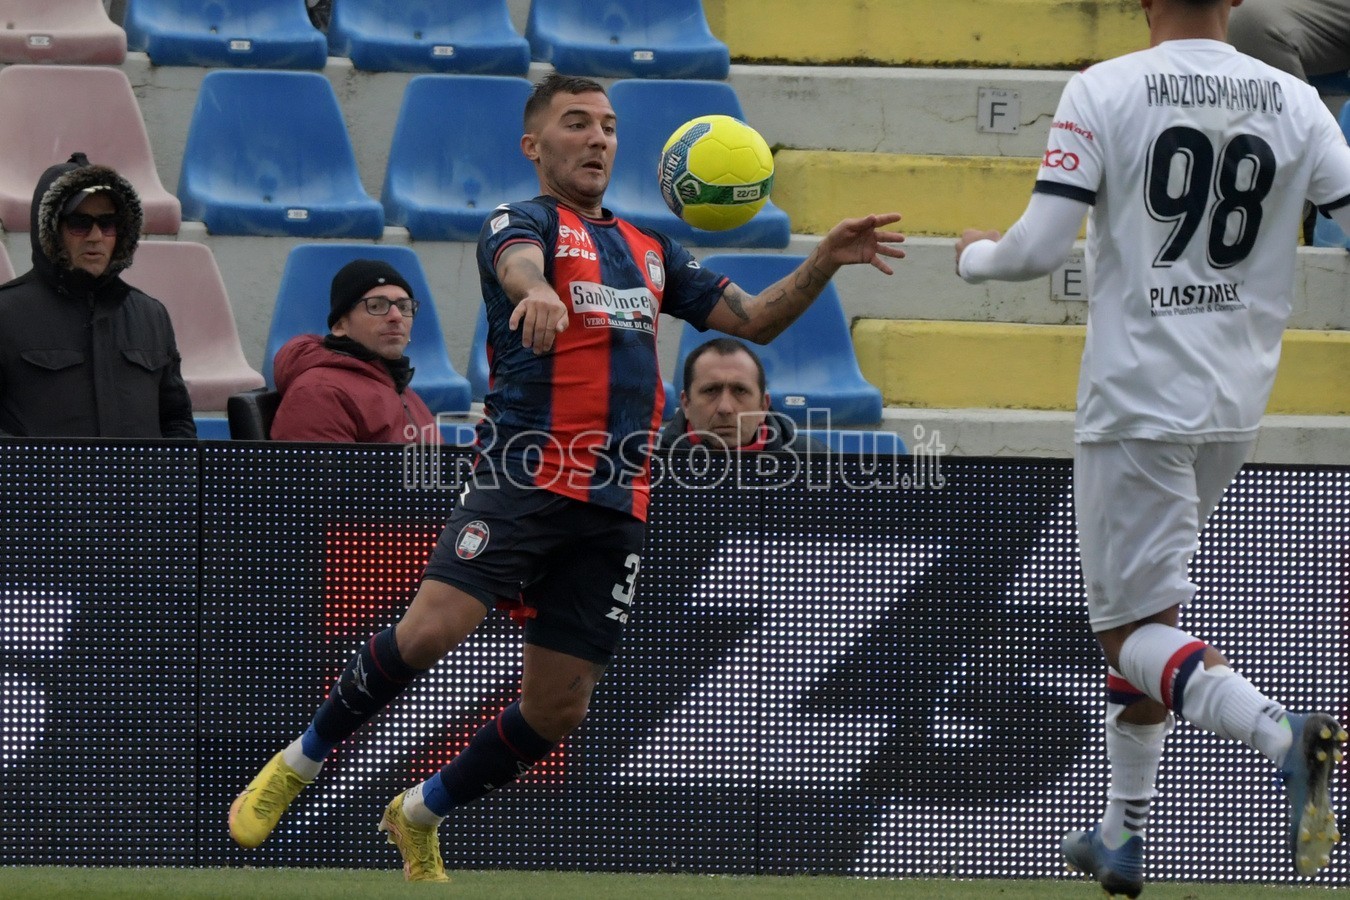 Crotone vs Potenza 0-0 - Serie C 2022-2023 - Rosito Andrea - (29 1 2023) Chirico Cosimo